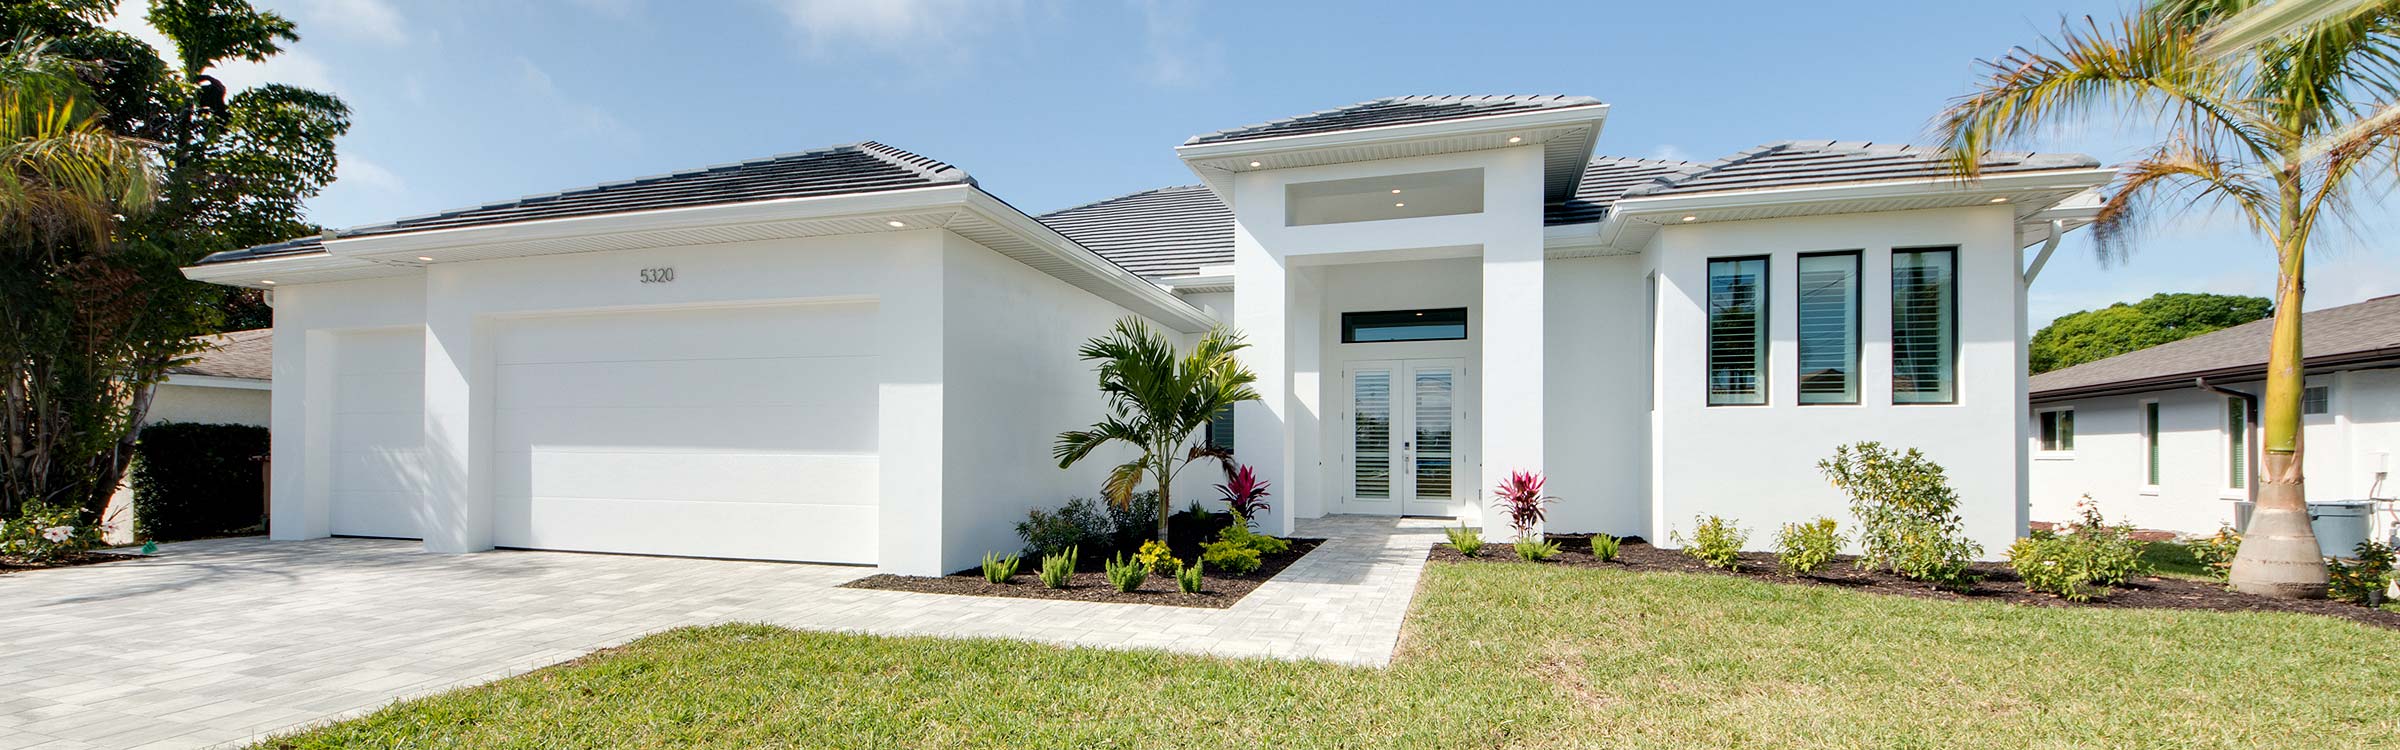 Immobilien in Florida verkaufen - Immobilienverkauf Cape Coral